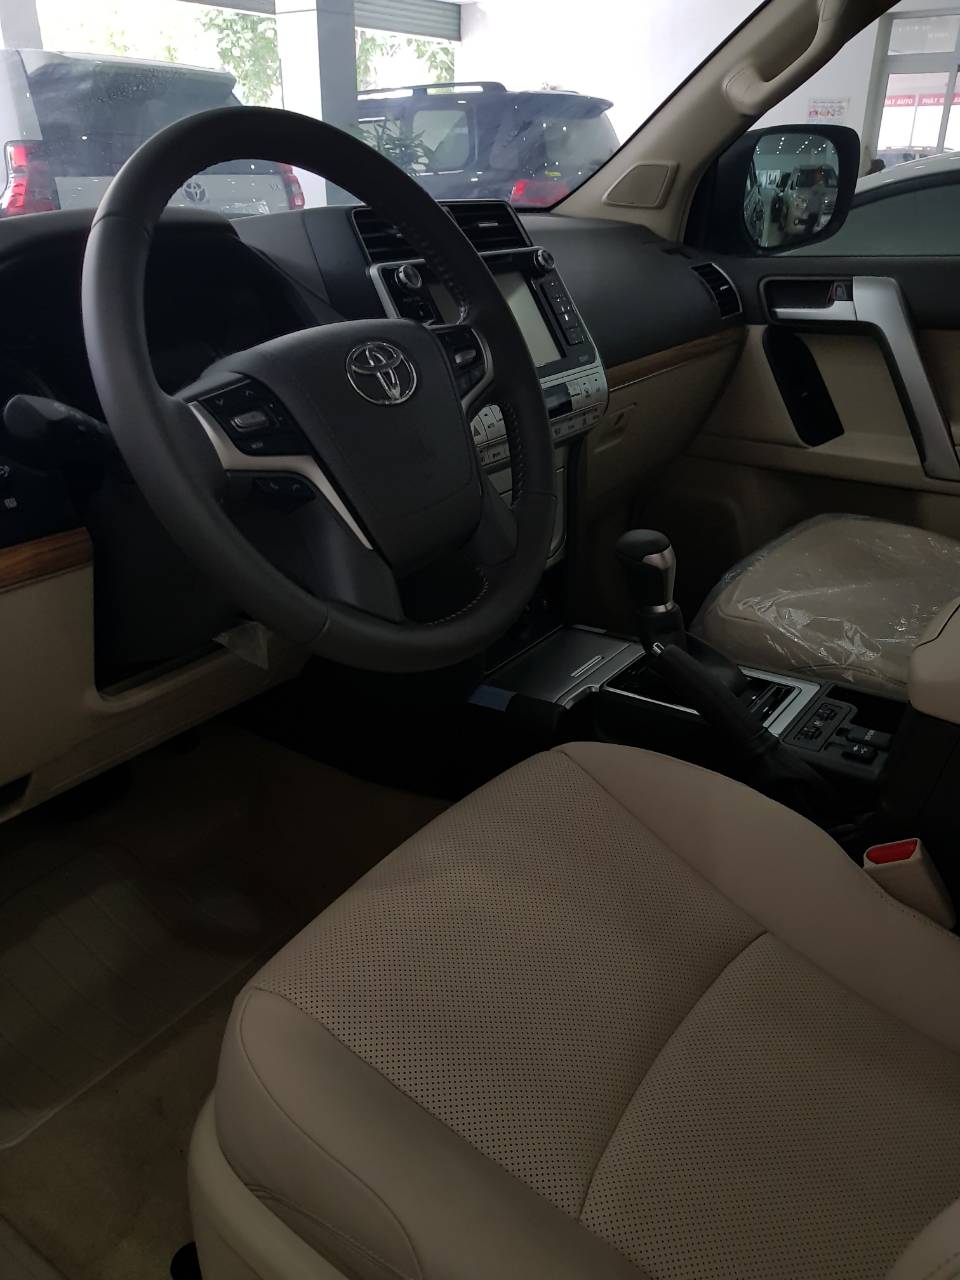 Toyota Land Cruiser Prado 2.7L VX 2018 - Bán Toyota Land Cruiser Prado 2.7L VX (2018) nhập khẩu, giao xe sớm, hỗ trợ vay tới 85% giá trị xe. Hotline 0987404316